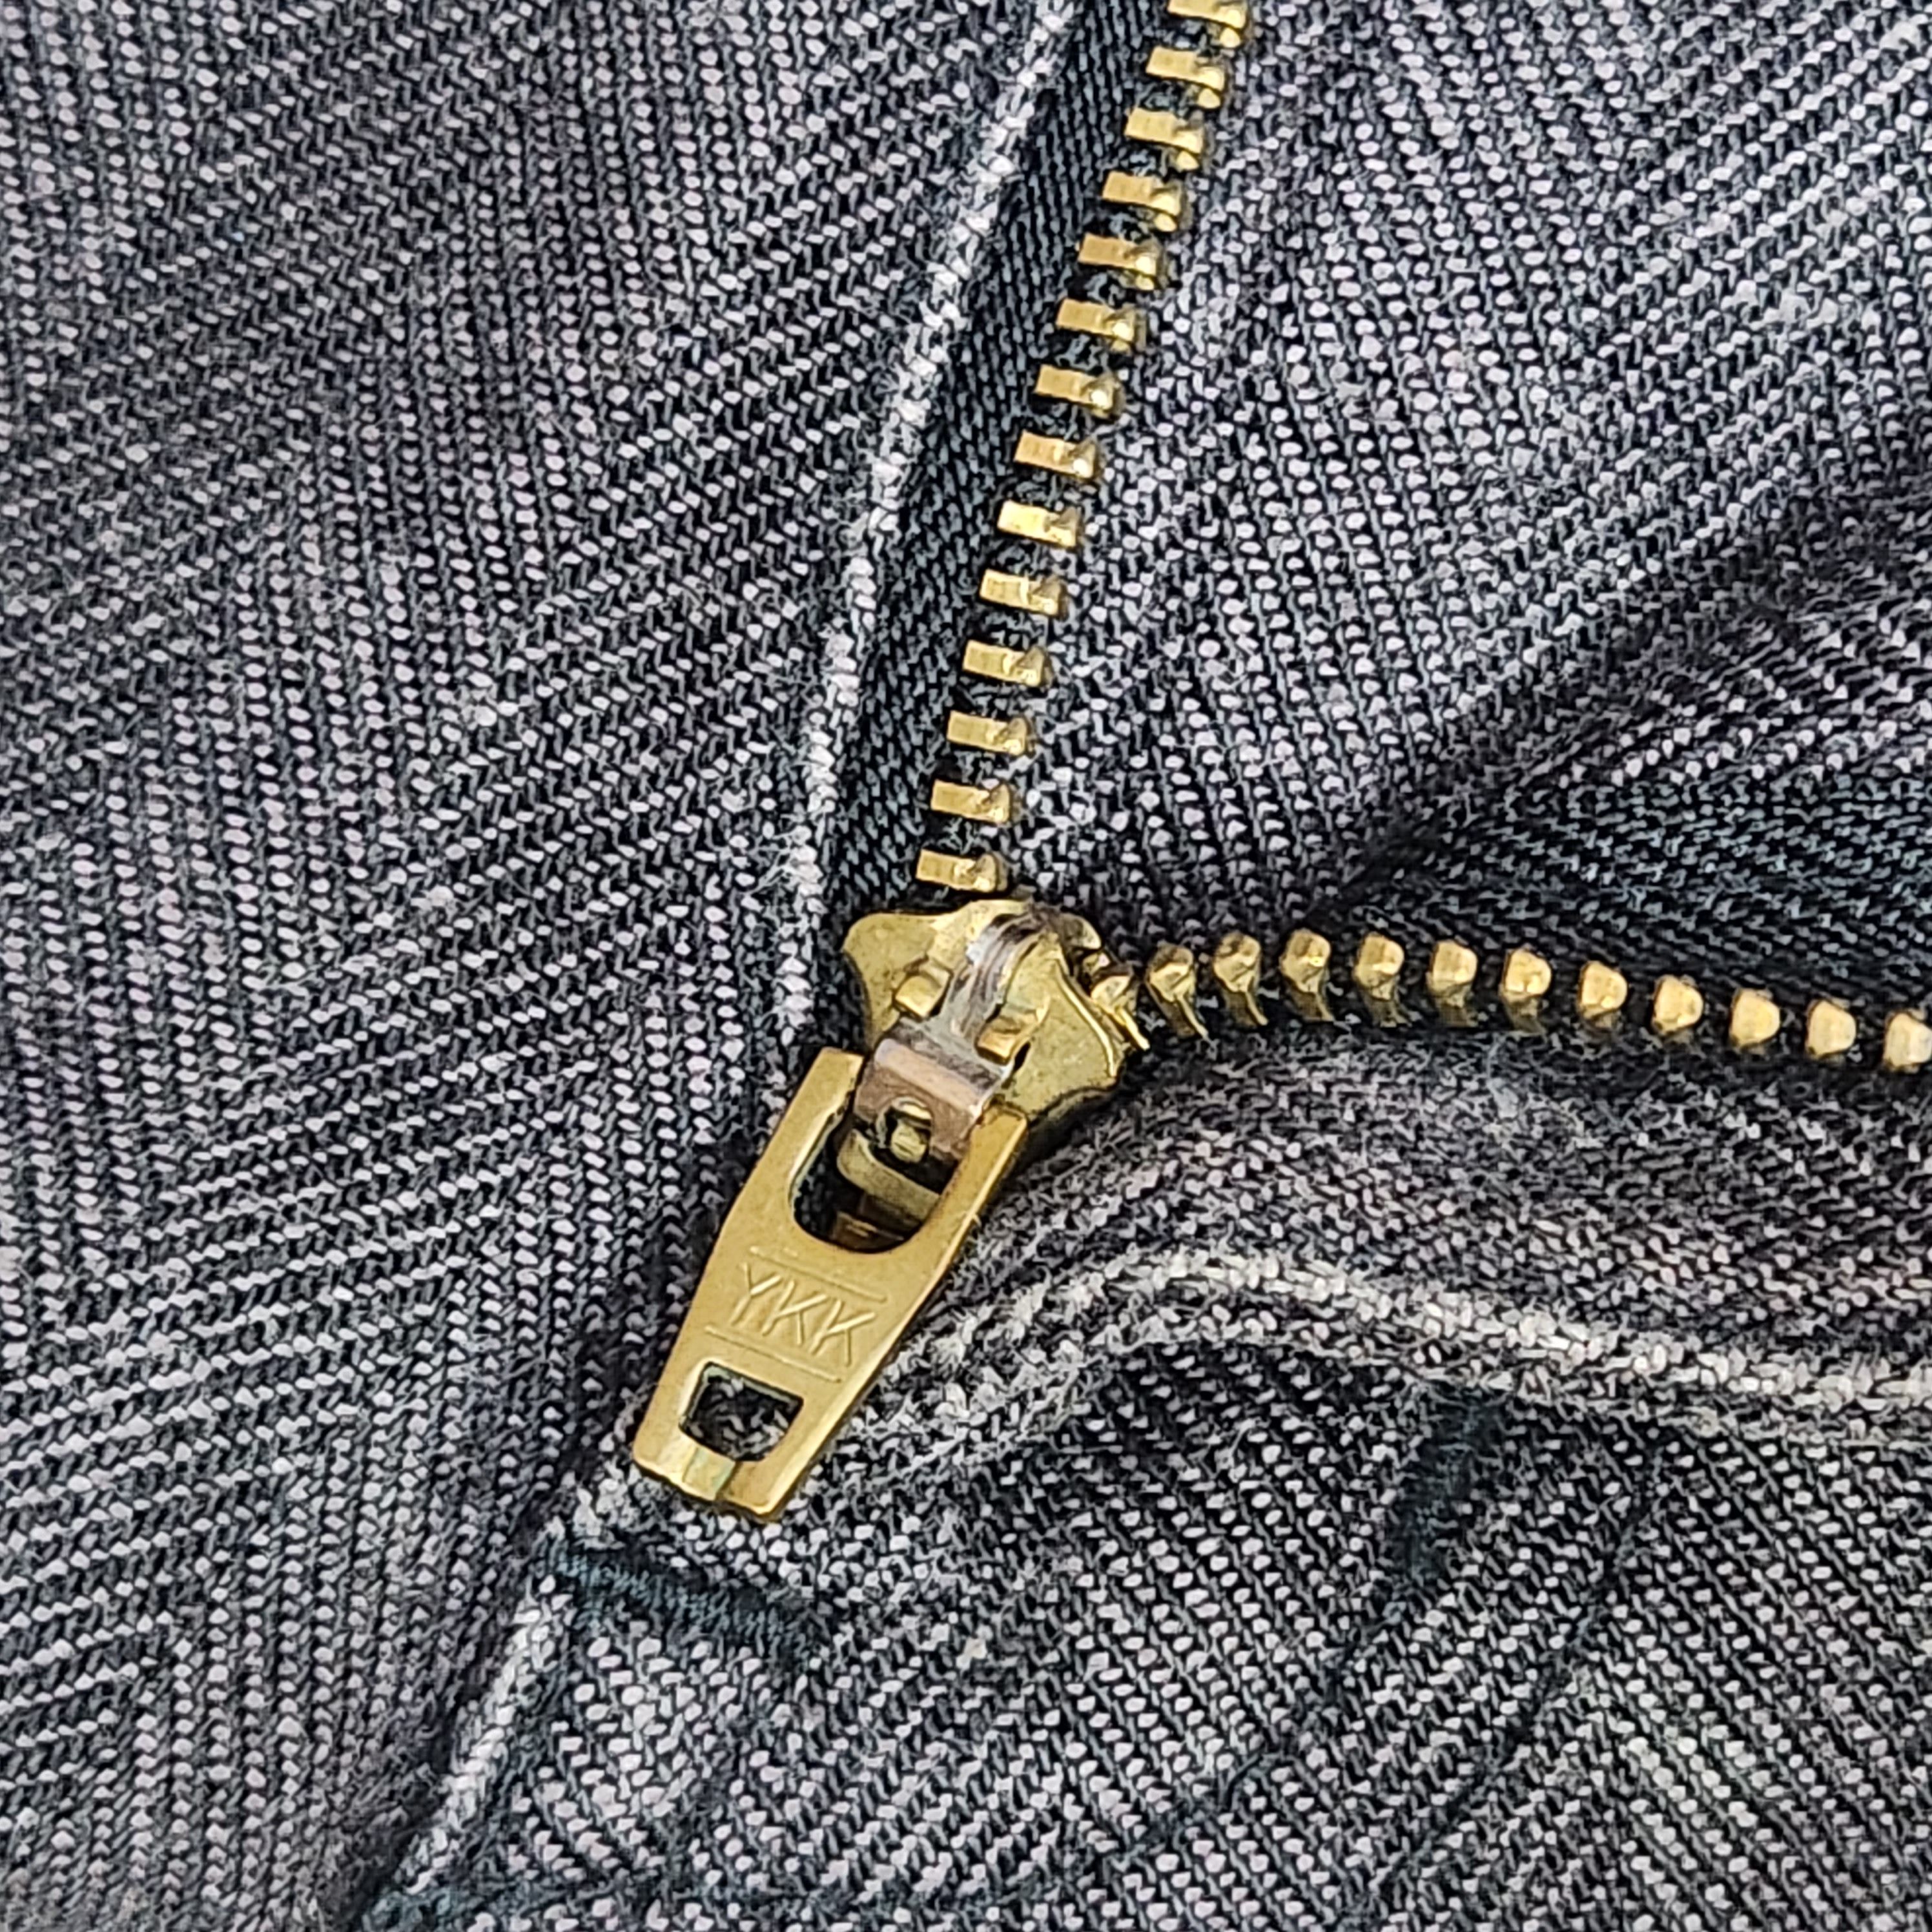 Japanese Brand - Flared Edge Rupert Denim Japan Jeans 70s Style - 17